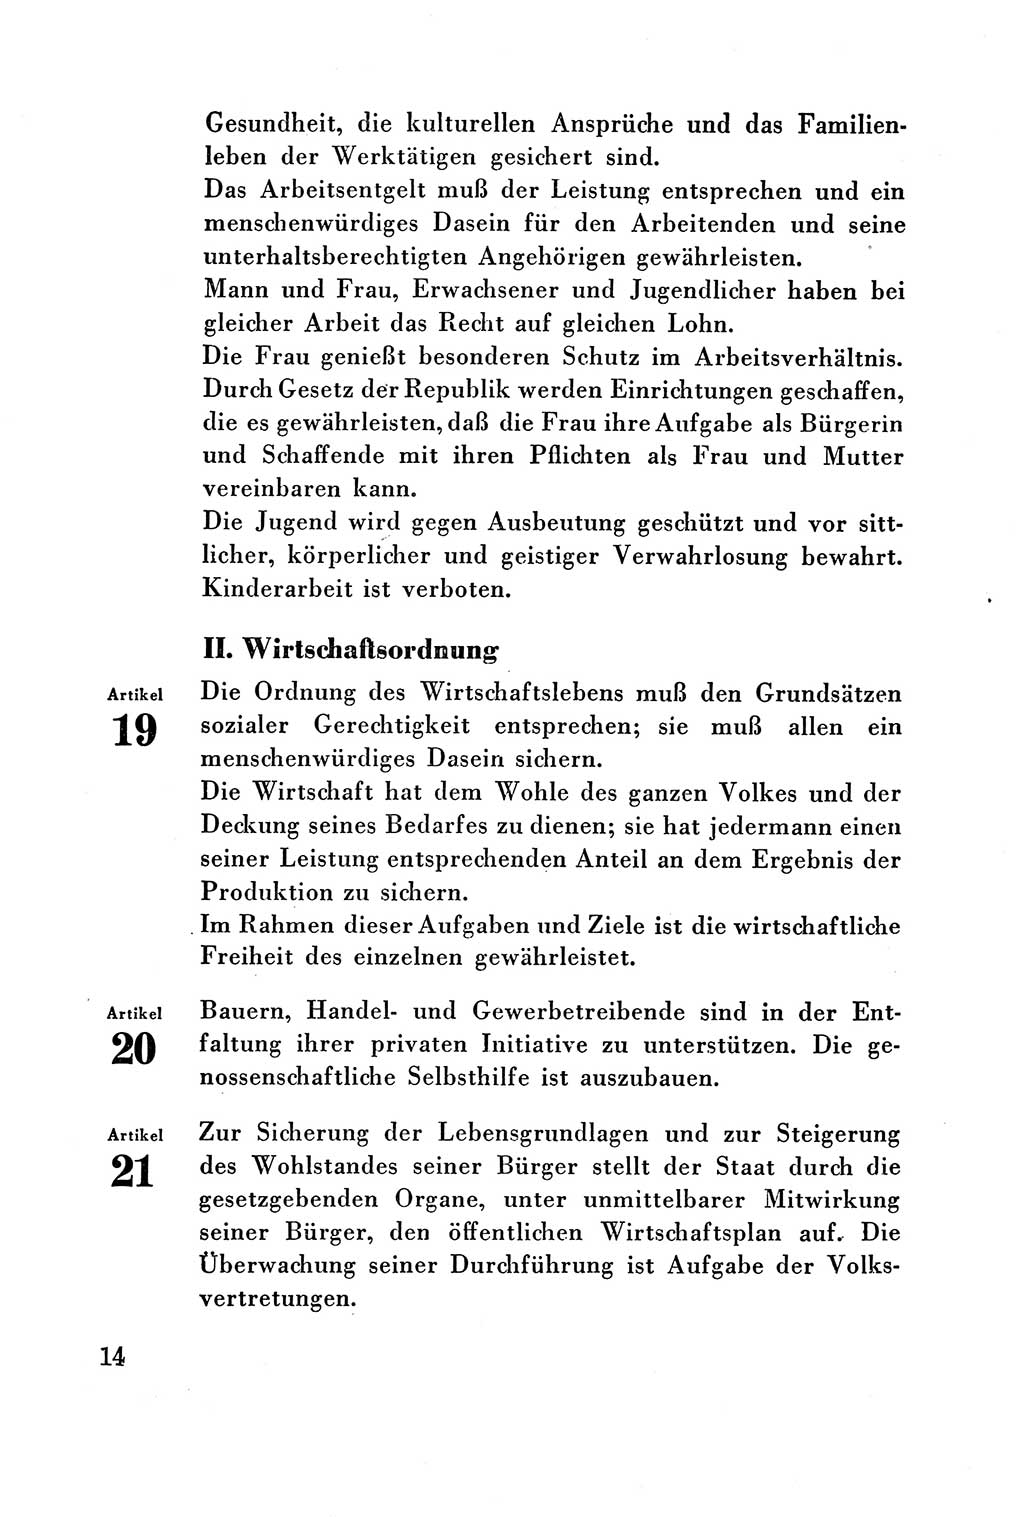 Verfassung der Deutschen Demokratischen Republik (DDR) vom 7. Oktober 1949, Seite 14 (Verf. DDR 1949, S. 14)